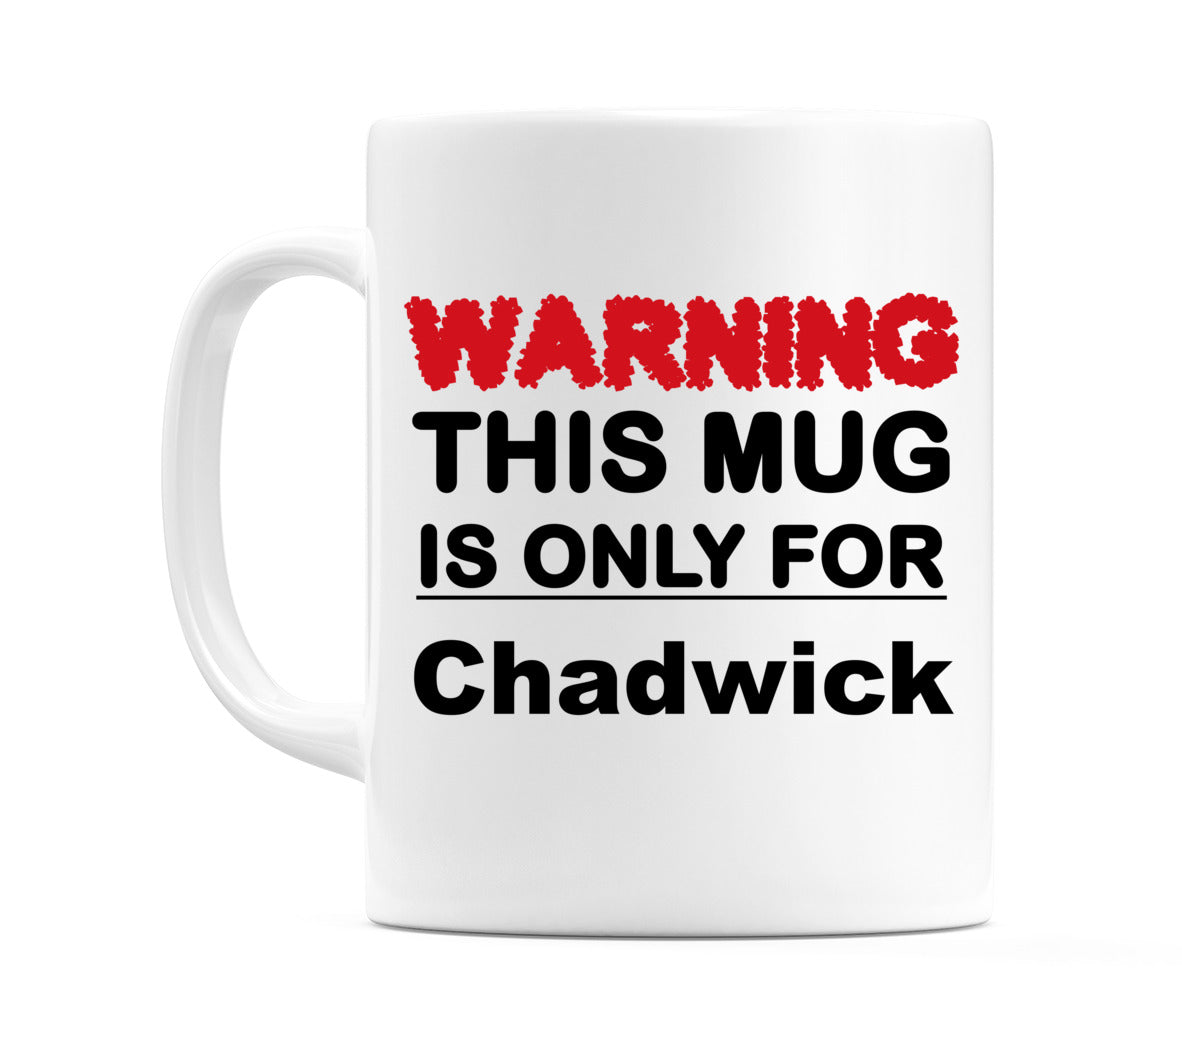 Warning This Mug is ONLY for Chadwick Mug